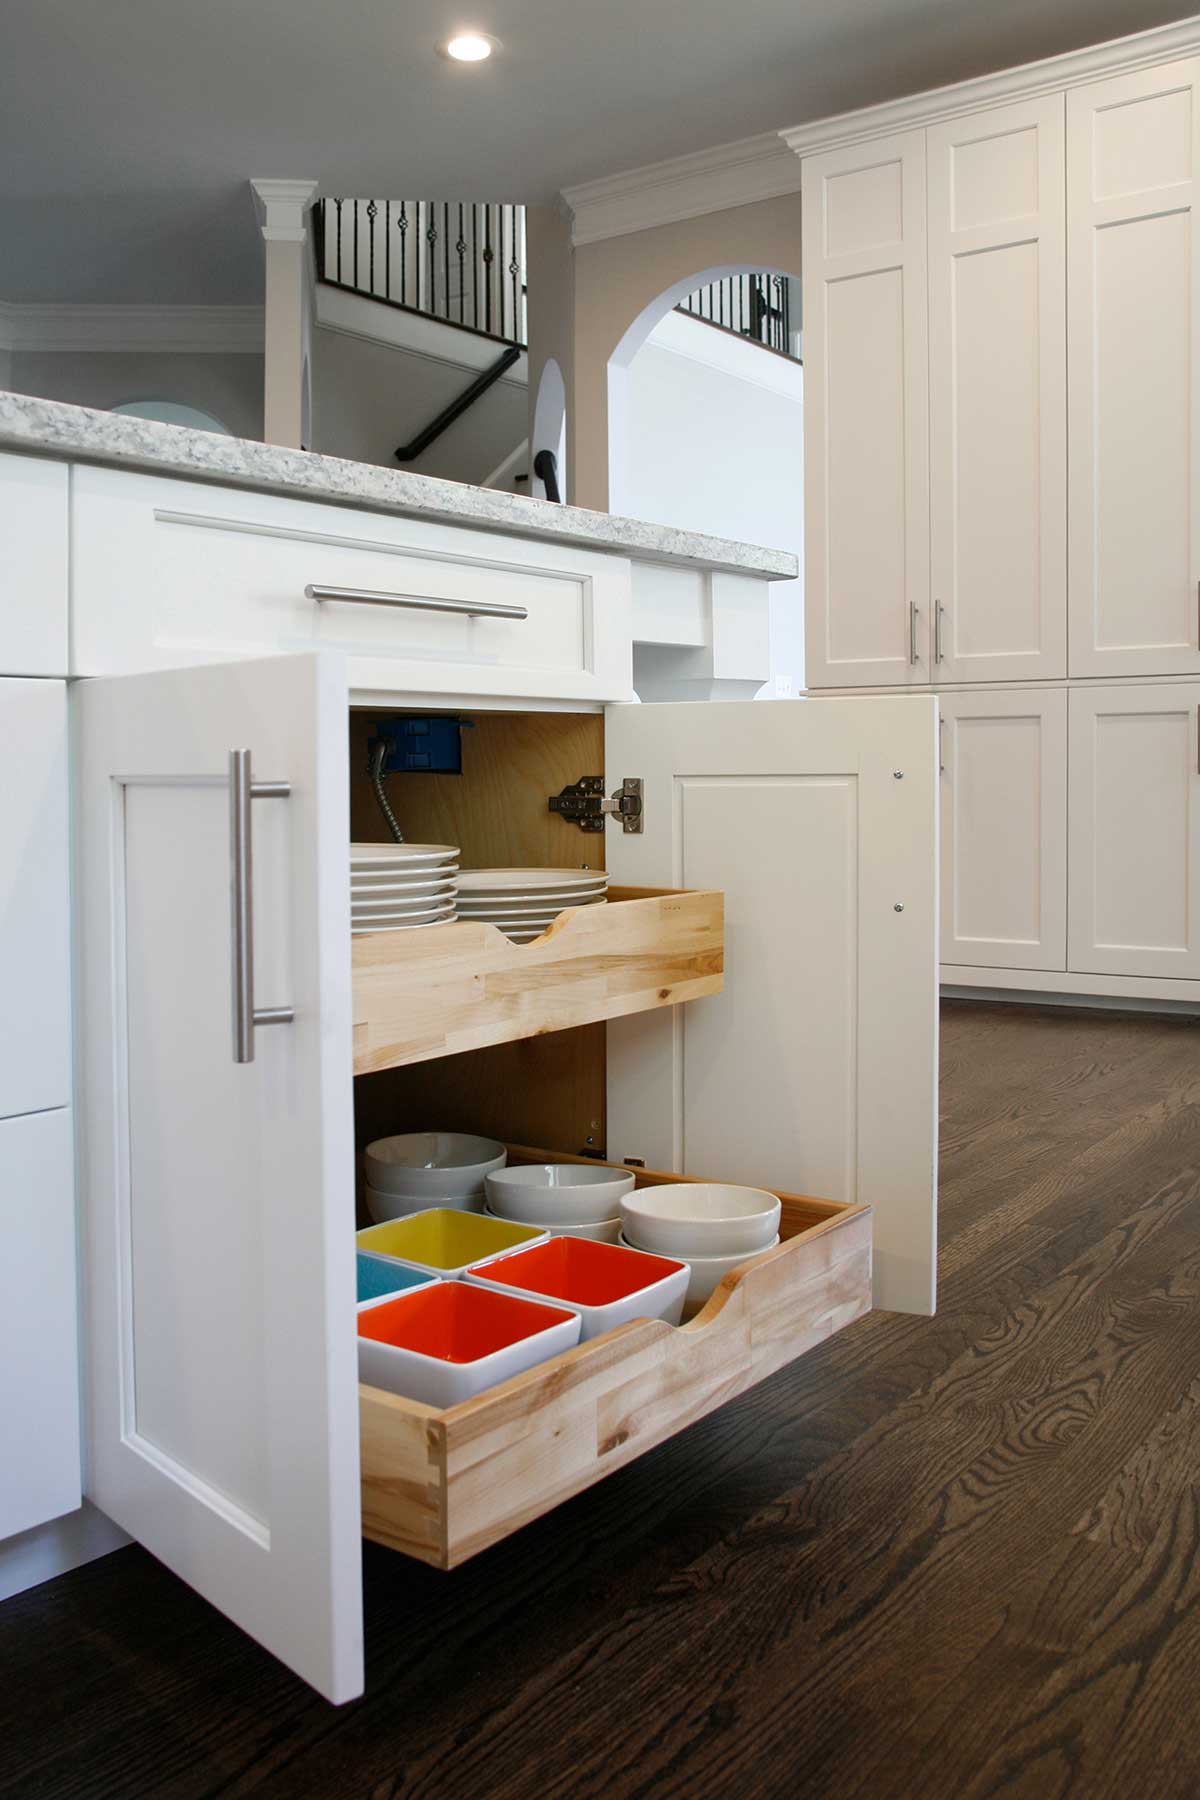 Dish storage drawer in kitchen island